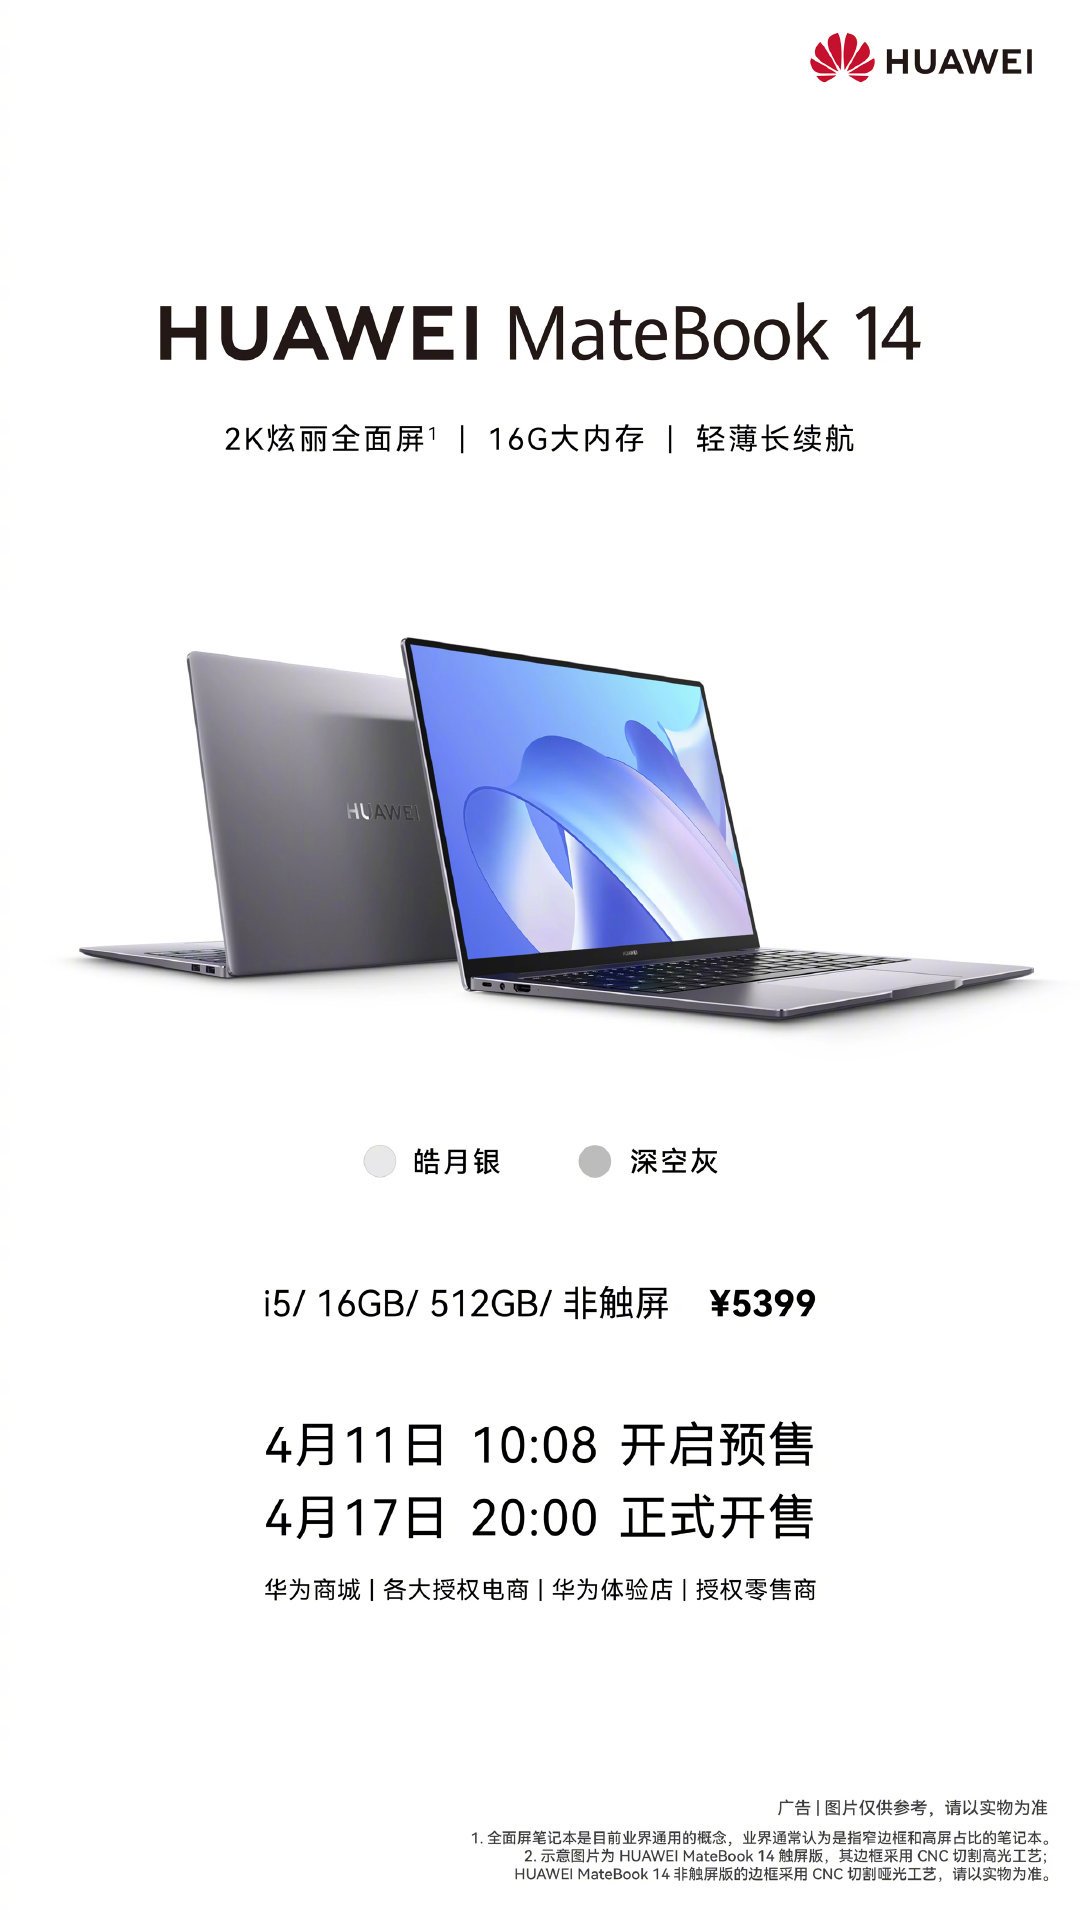 Huawei MateBook 14 Edición sin pantalla táctil